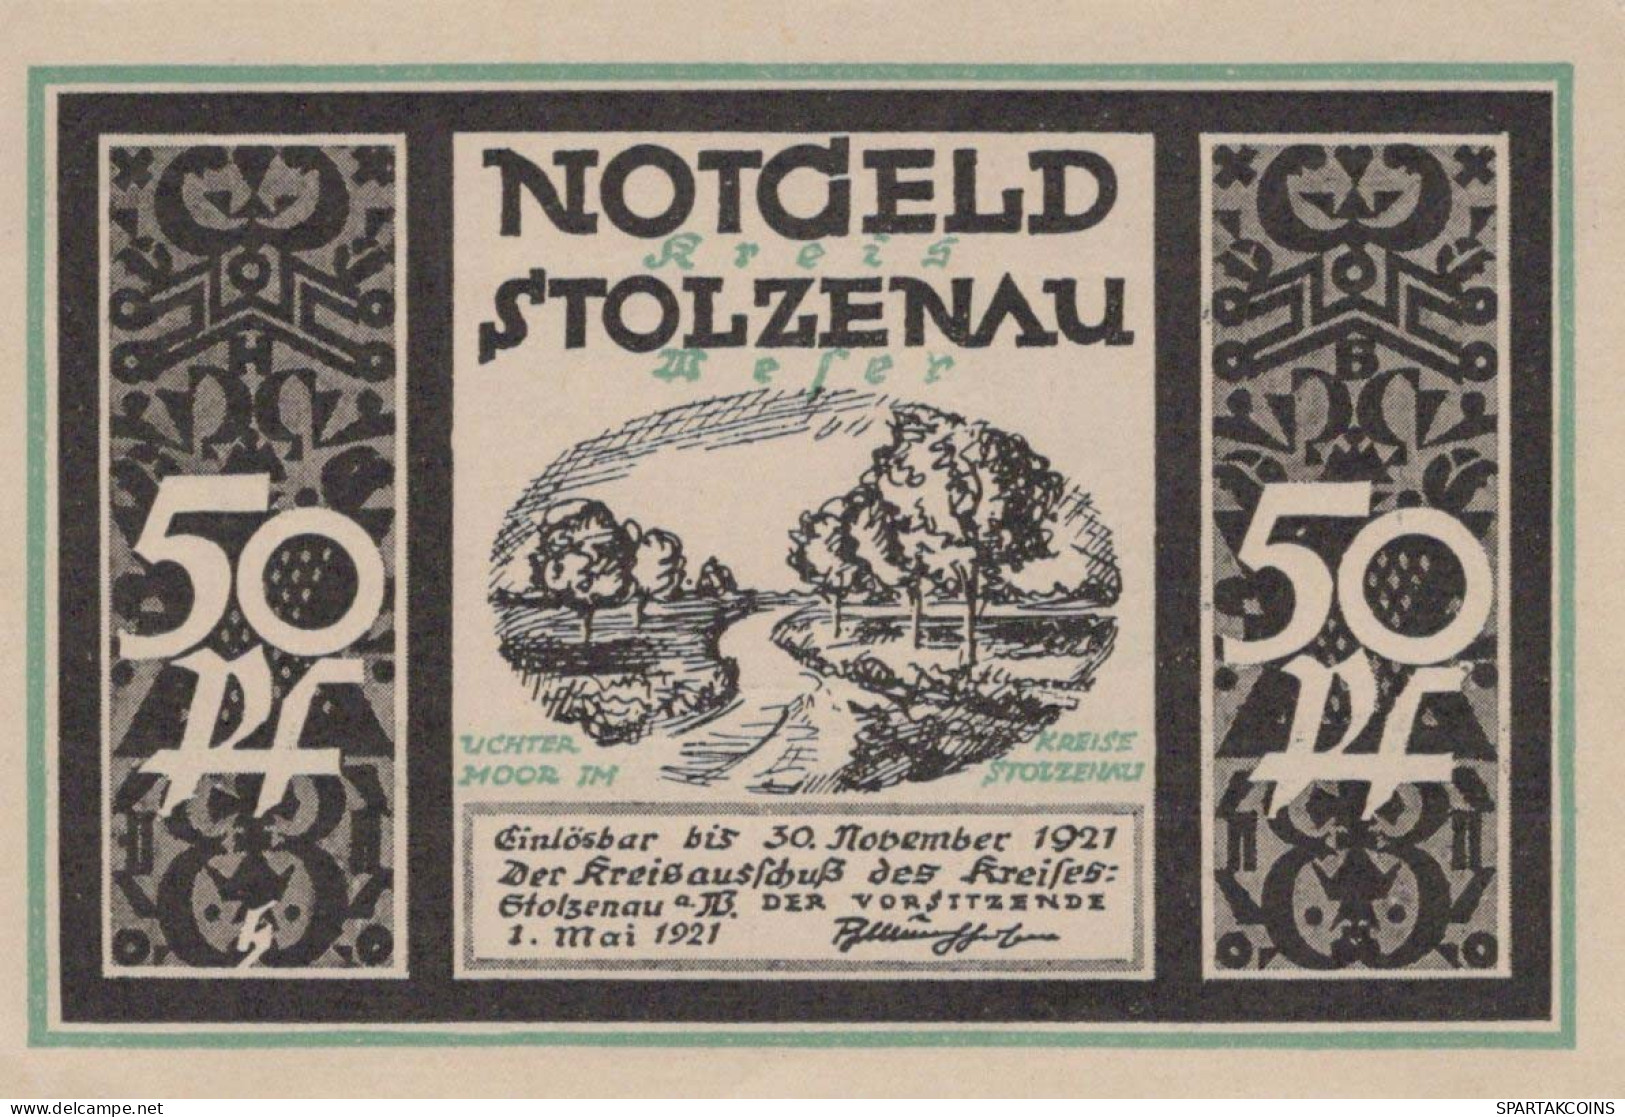 50 PFENNIG 1921 Stadt STOLZENAU Hanover DEUTSCHLAND Notgeld Banknote #PJ078 - [11] Local Banknote Issues